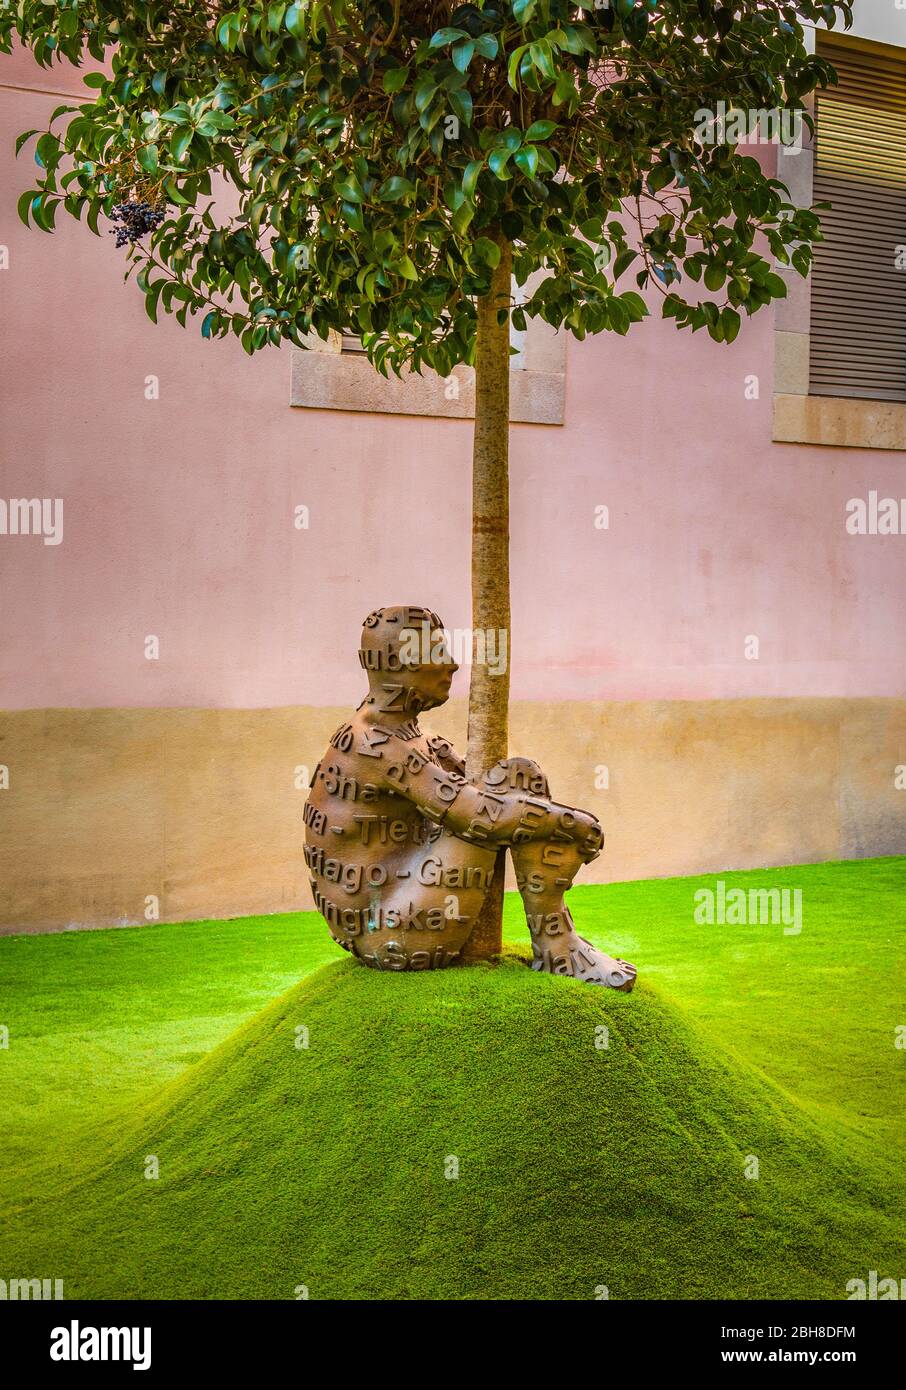 Barcelona City, Modern Art Museum, Jaume Plensa Sculptures Stock Photo